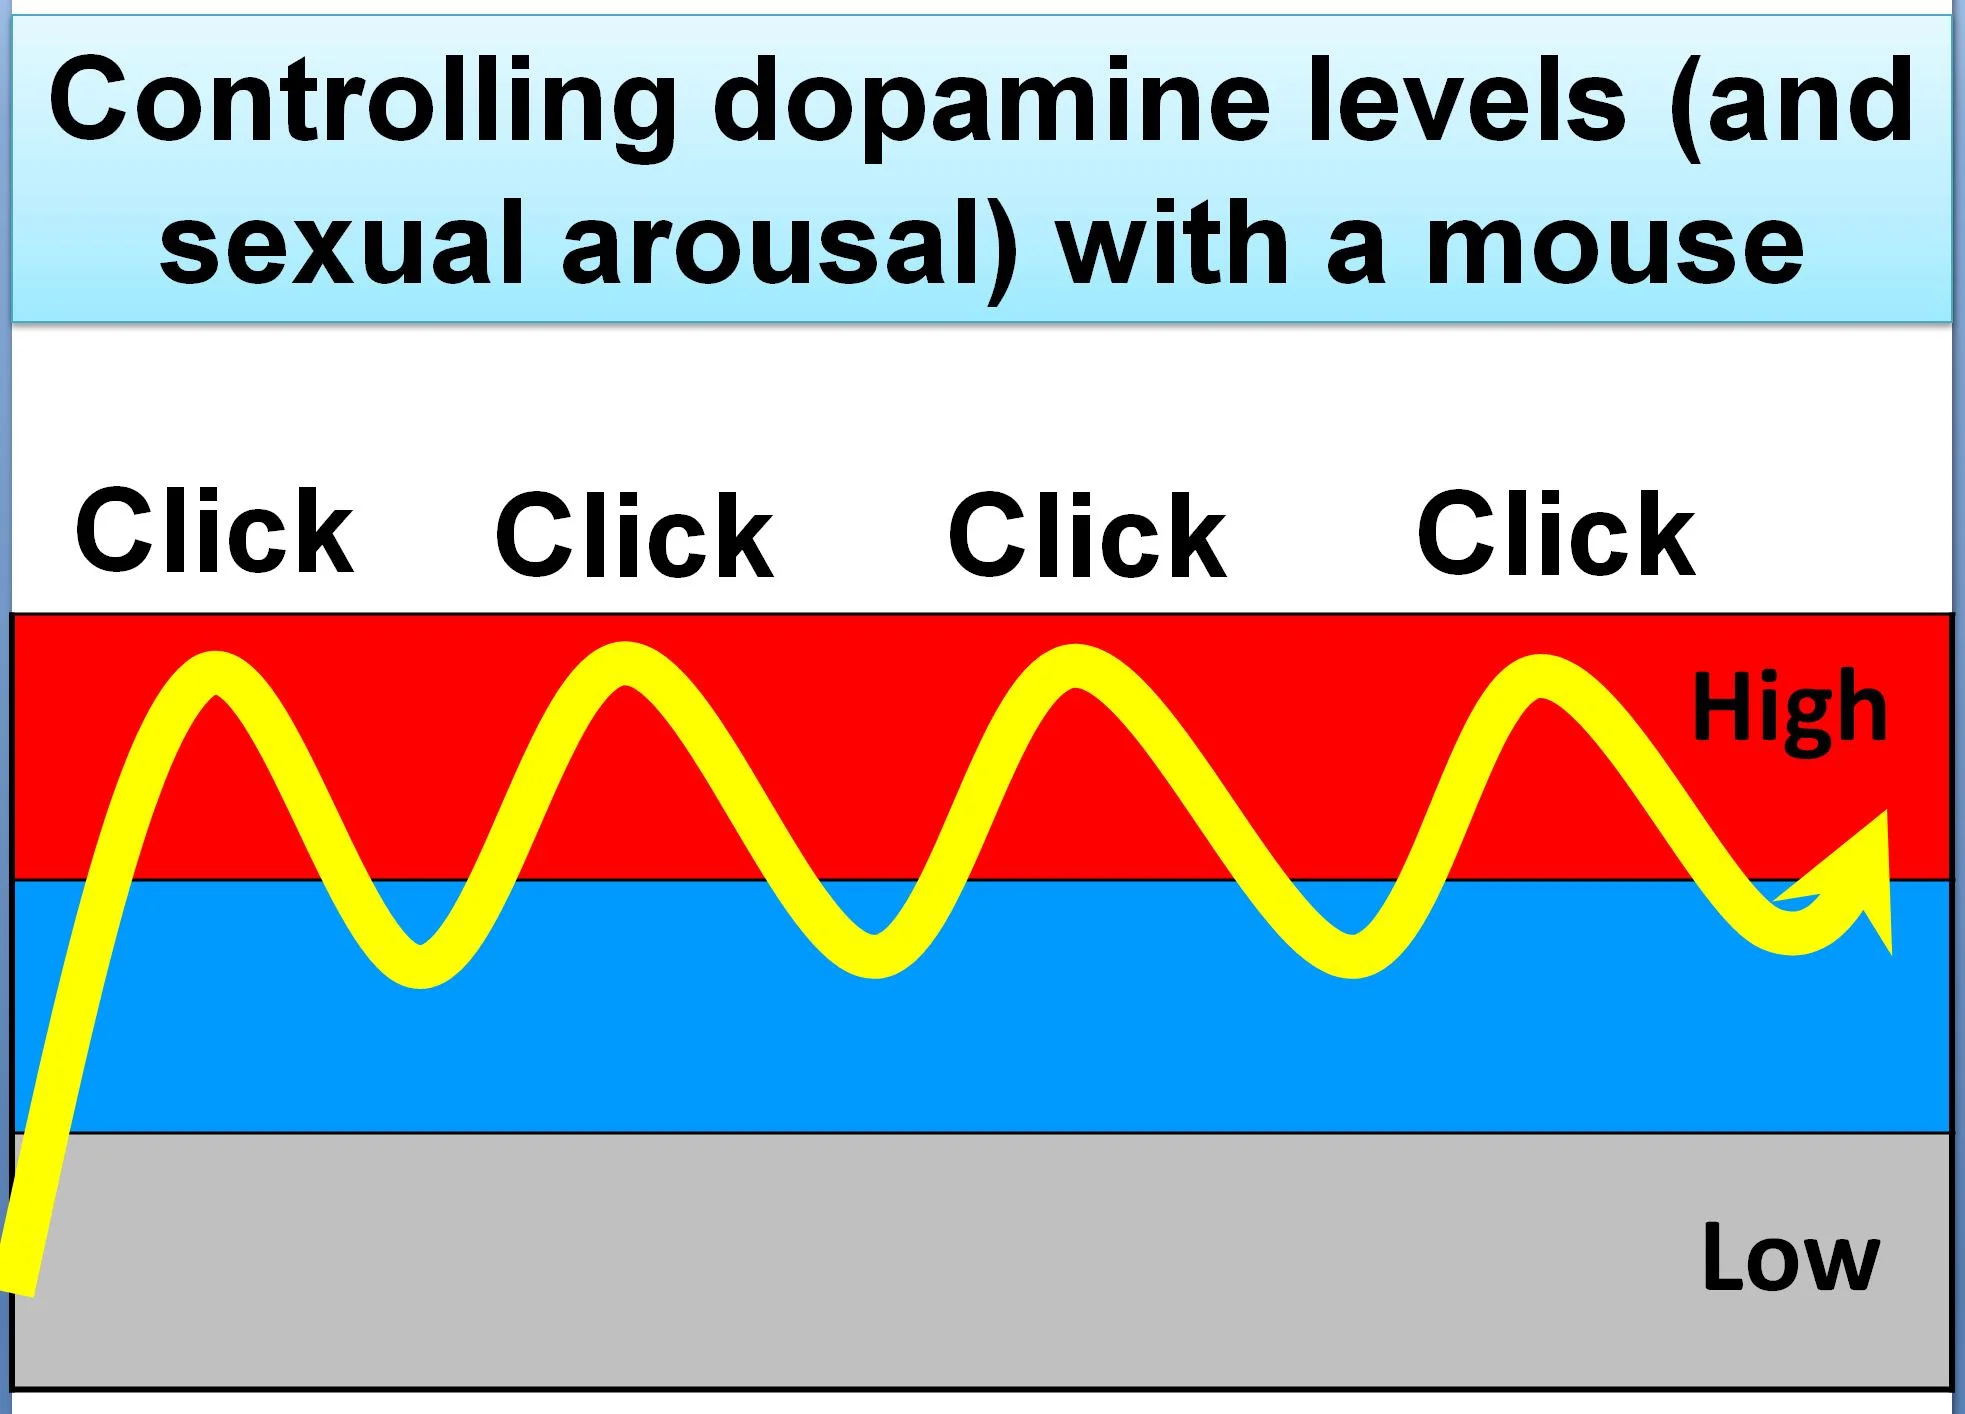 kontrolowanie poziomu dopaminy (i podniecenia seksualnego) podczas oglądania filmów za pomocą kliknięć myszy